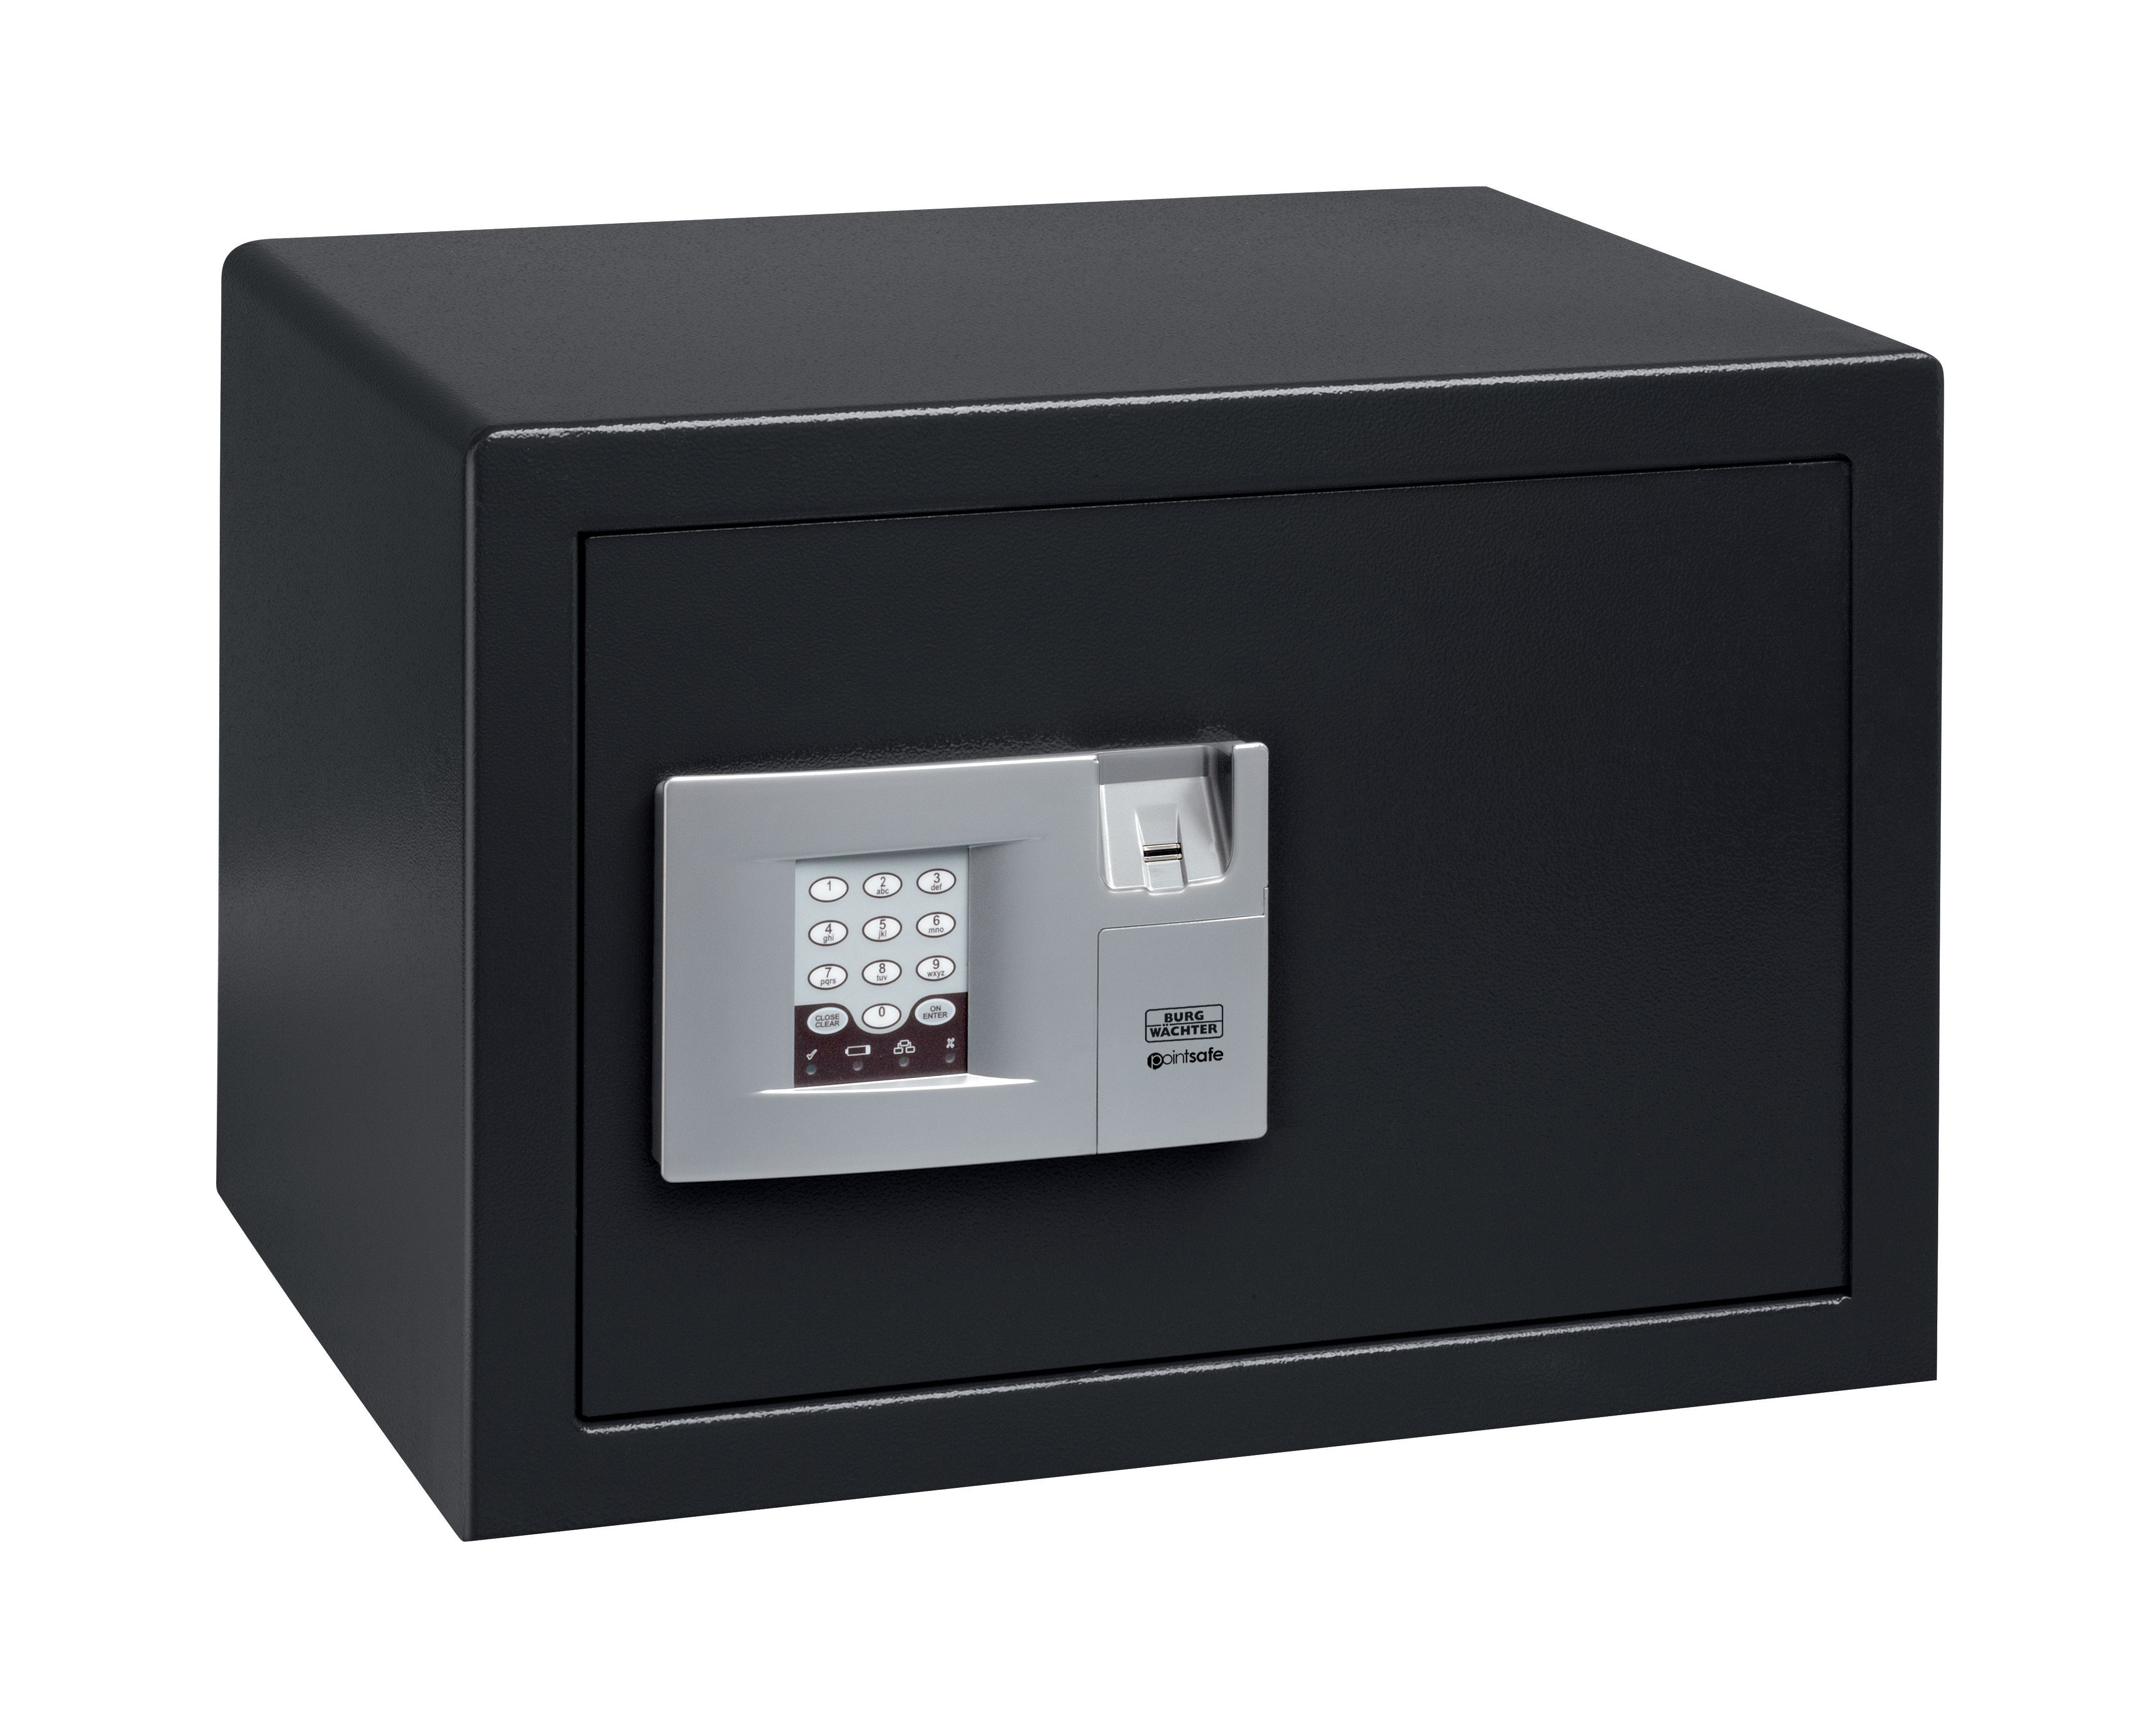 Image of Burg-Wachter Black Pointsafe Electronic Home Safe with Fingerscan - 38.8L